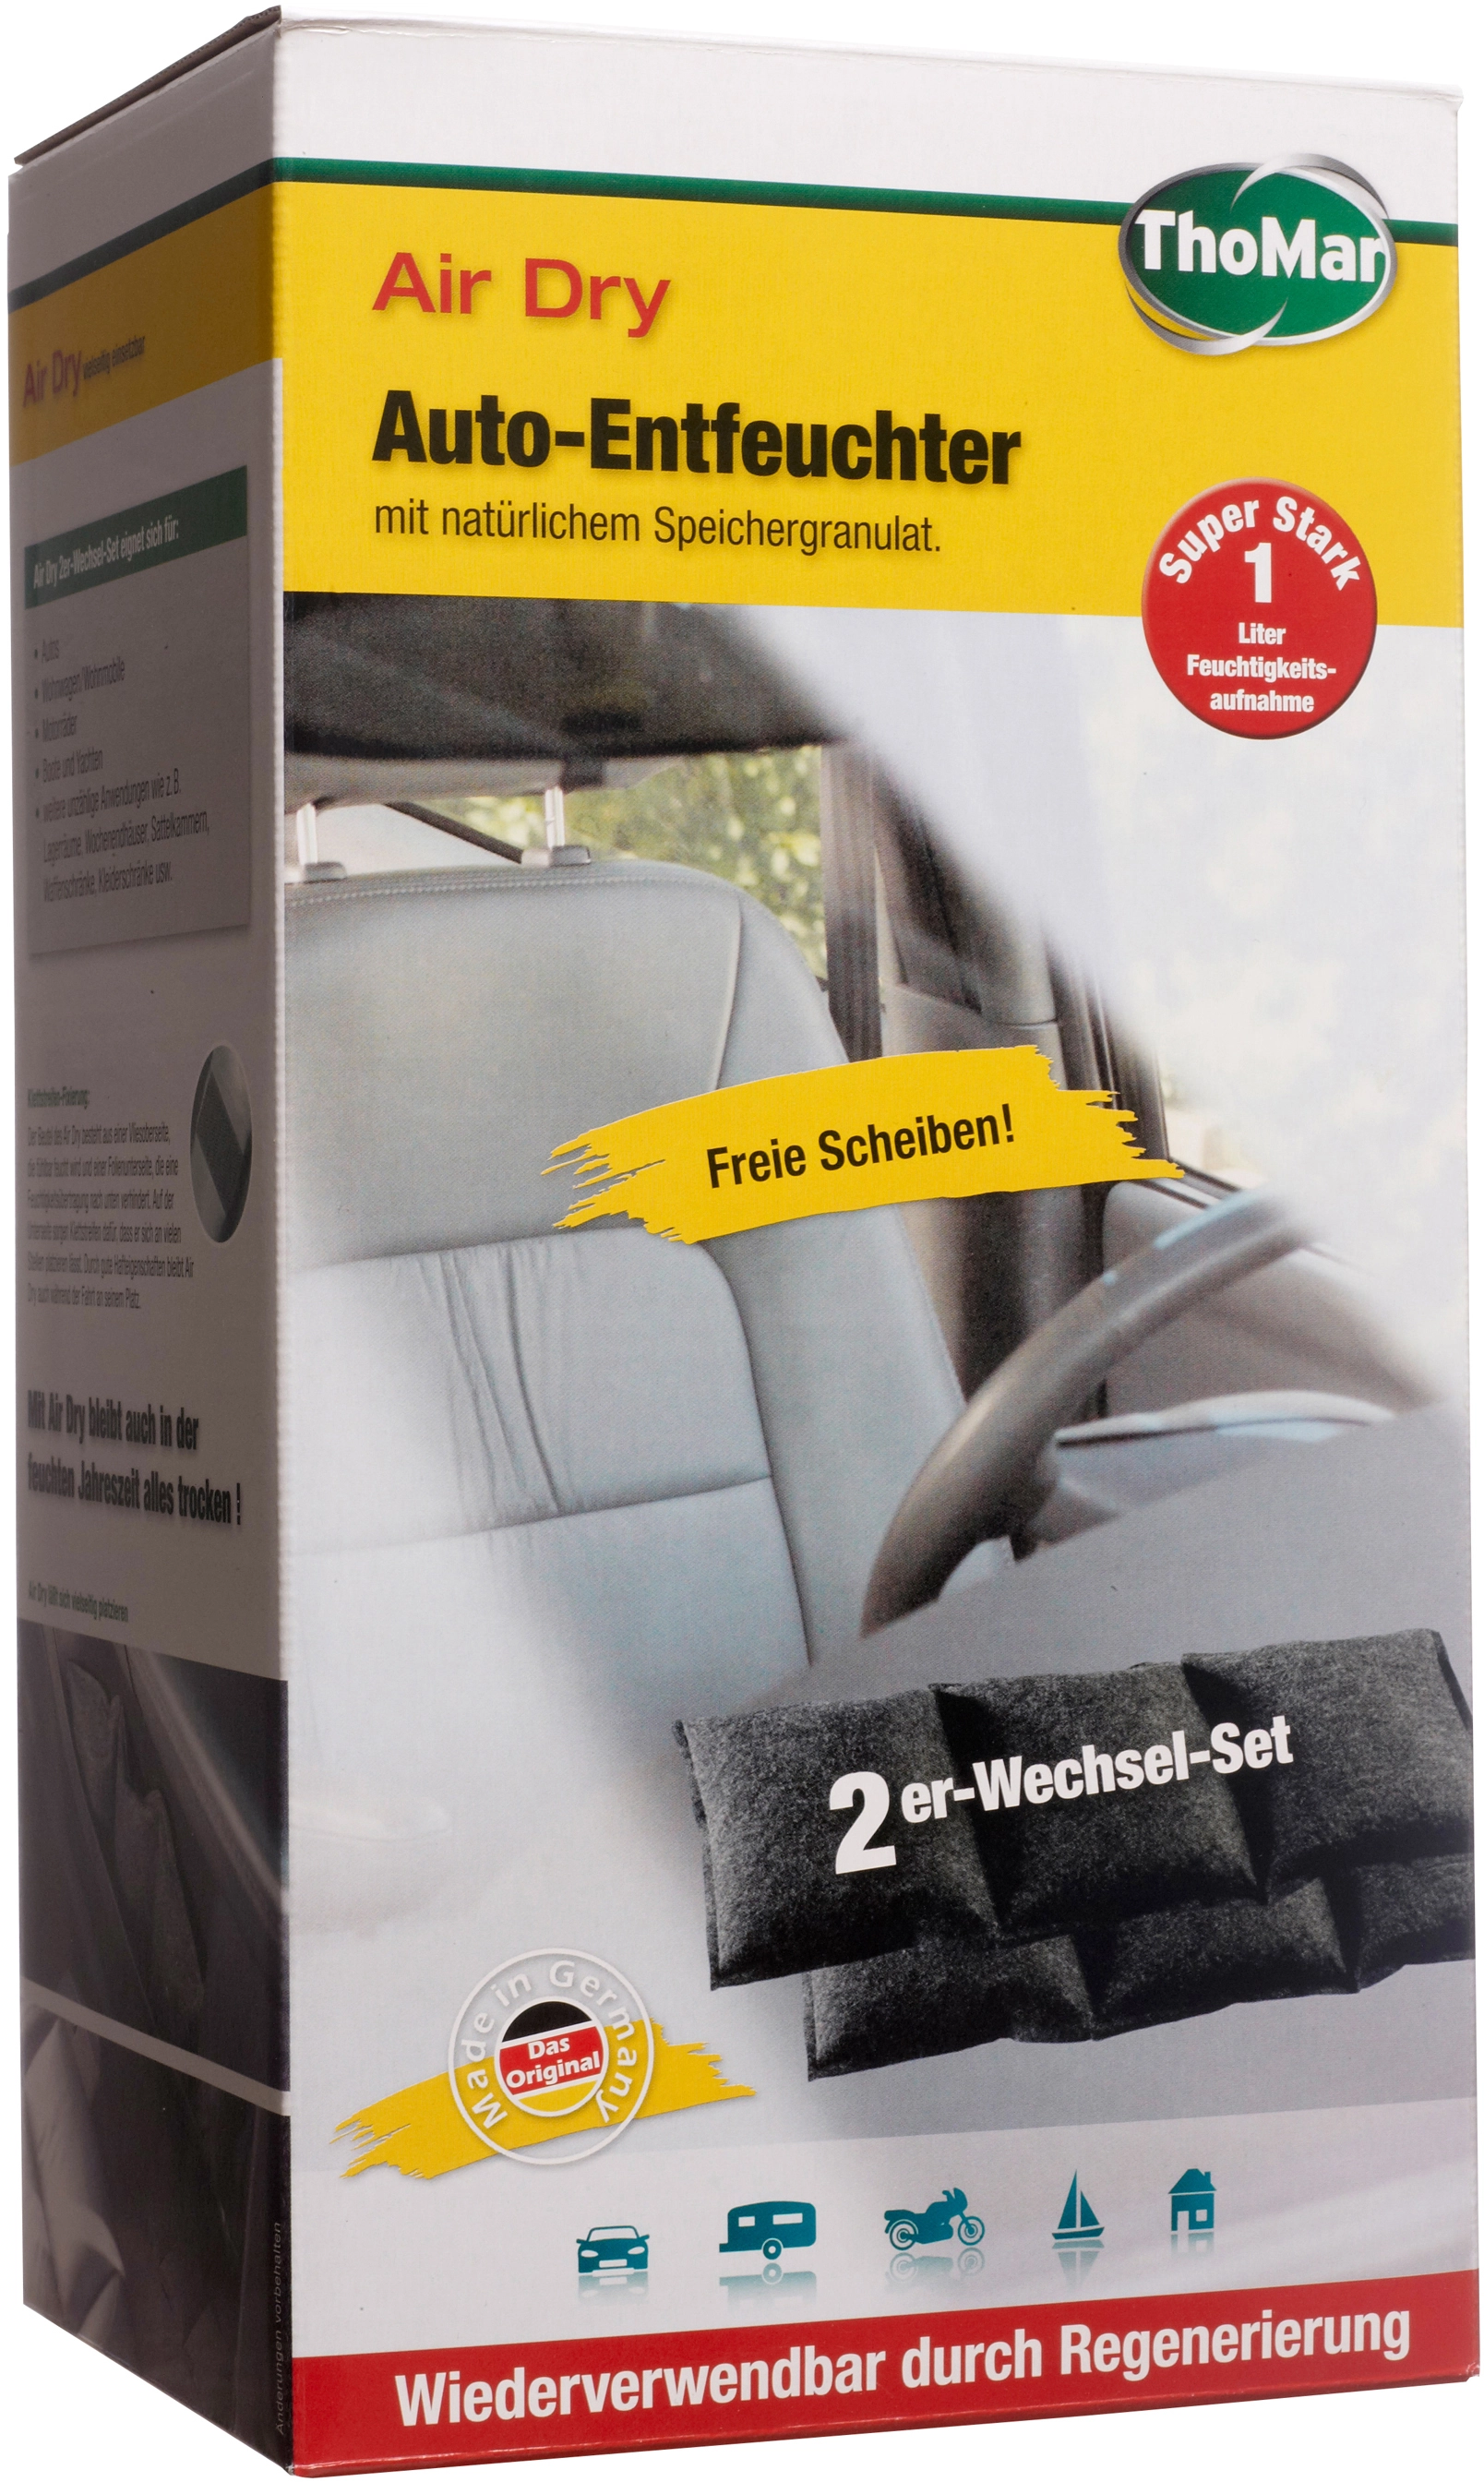 Thomar Air Dry Auto-Luftentfeuchter 2er-Wechselset kaufen bei OBI